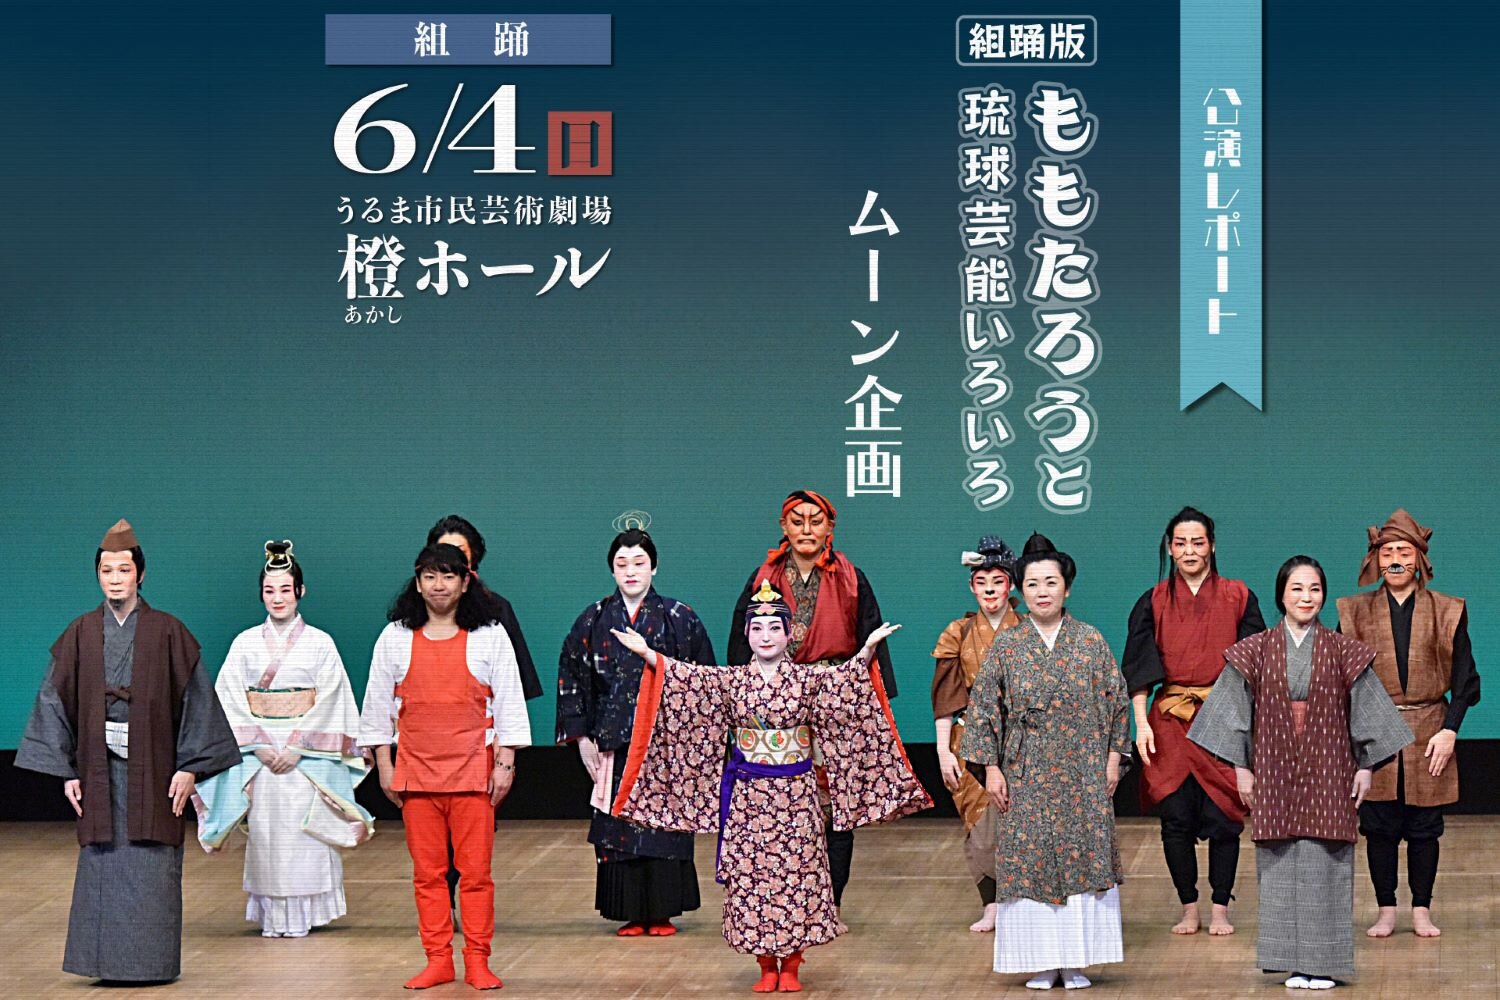 【公演レポート】6月4日 ムーン企画「組踊版ももたろうと 琉球芸能いろいろ」掲載しました。